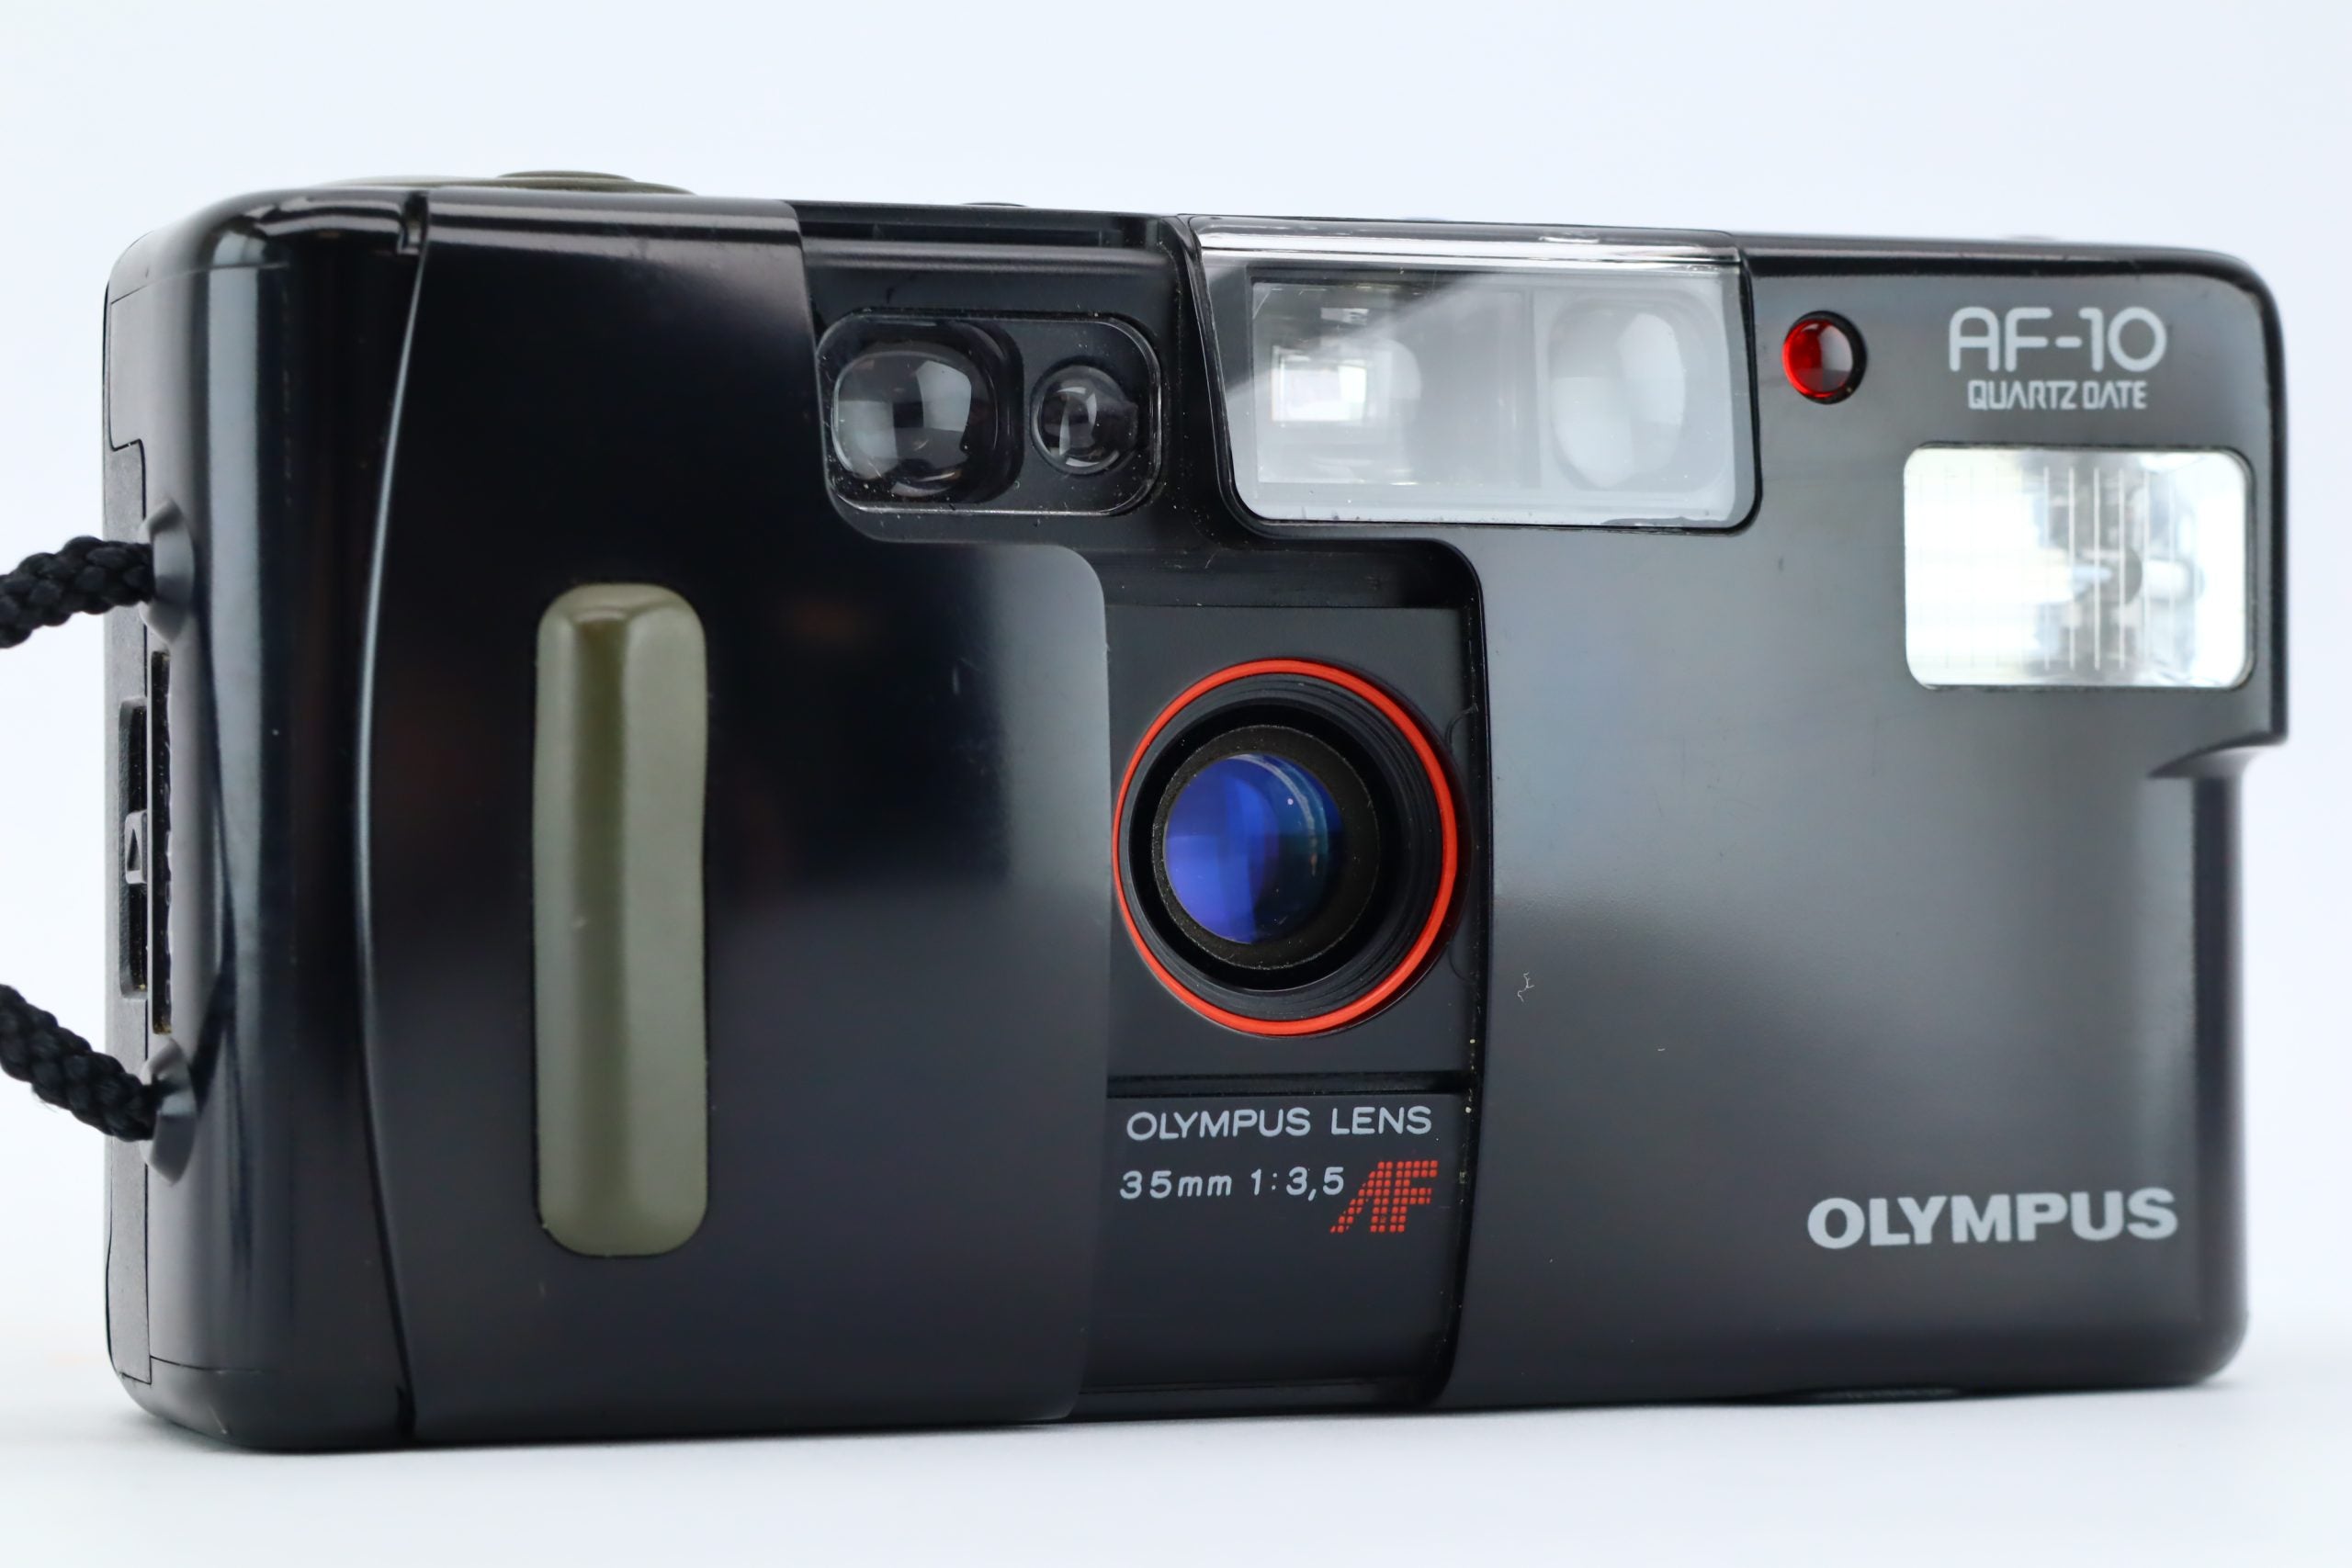 Olympus AF-10 Twin Quartz Date - フィルムカメラ